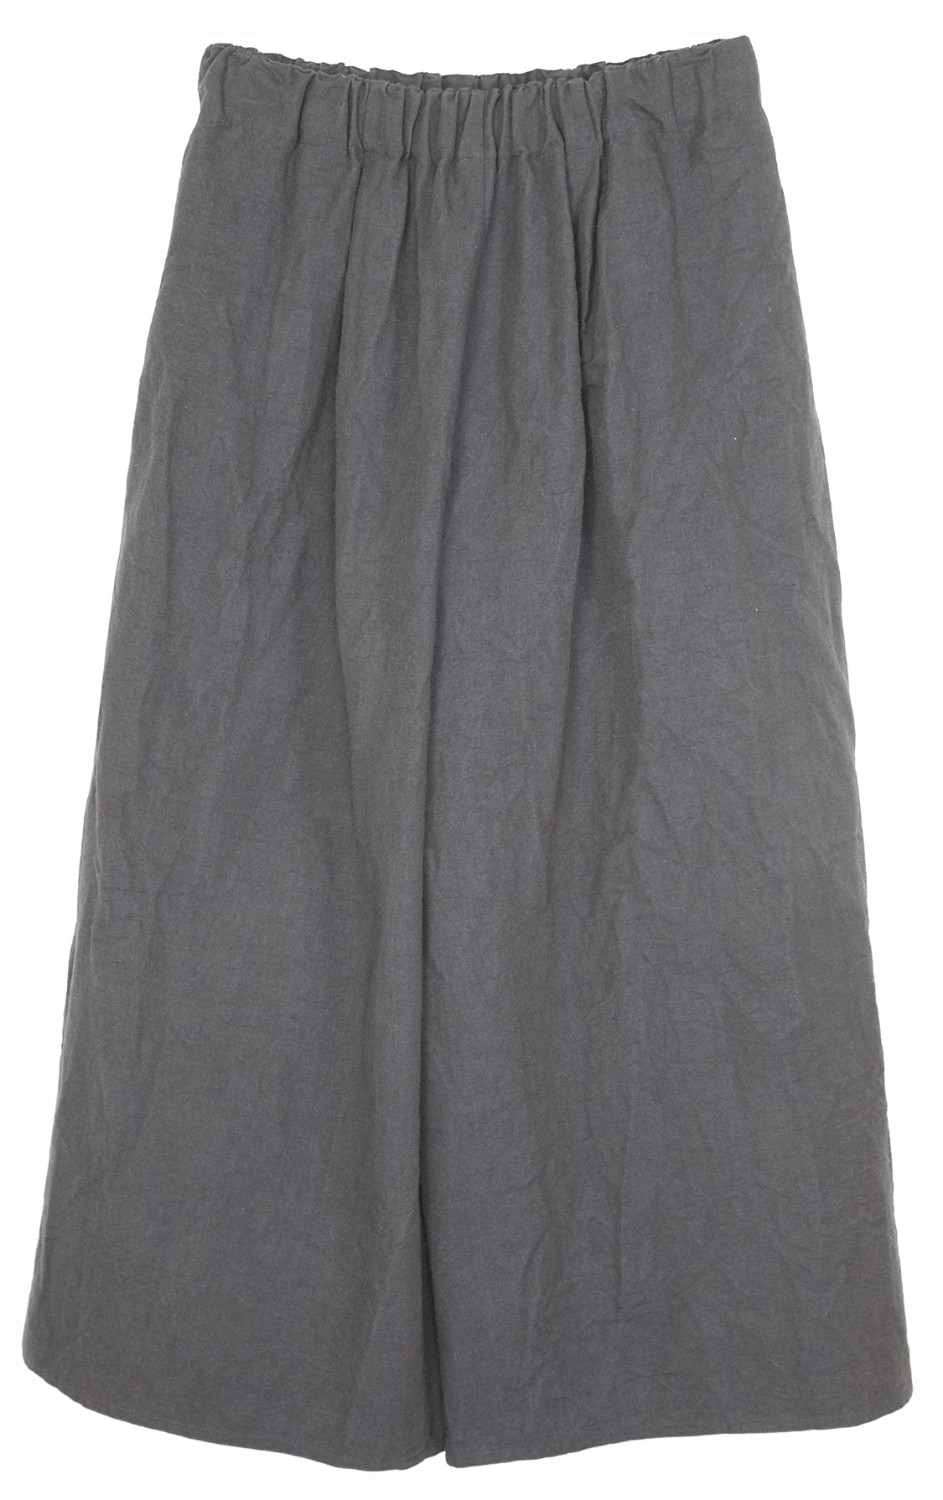 shop Dusan Sales Pantaloni: Pantalone Dusan, color sabbia, in cotone e lino, elastico in vita, lunghezza fino alle caviglie.

Composizione: 50% cotone, 50% lino. number 1186